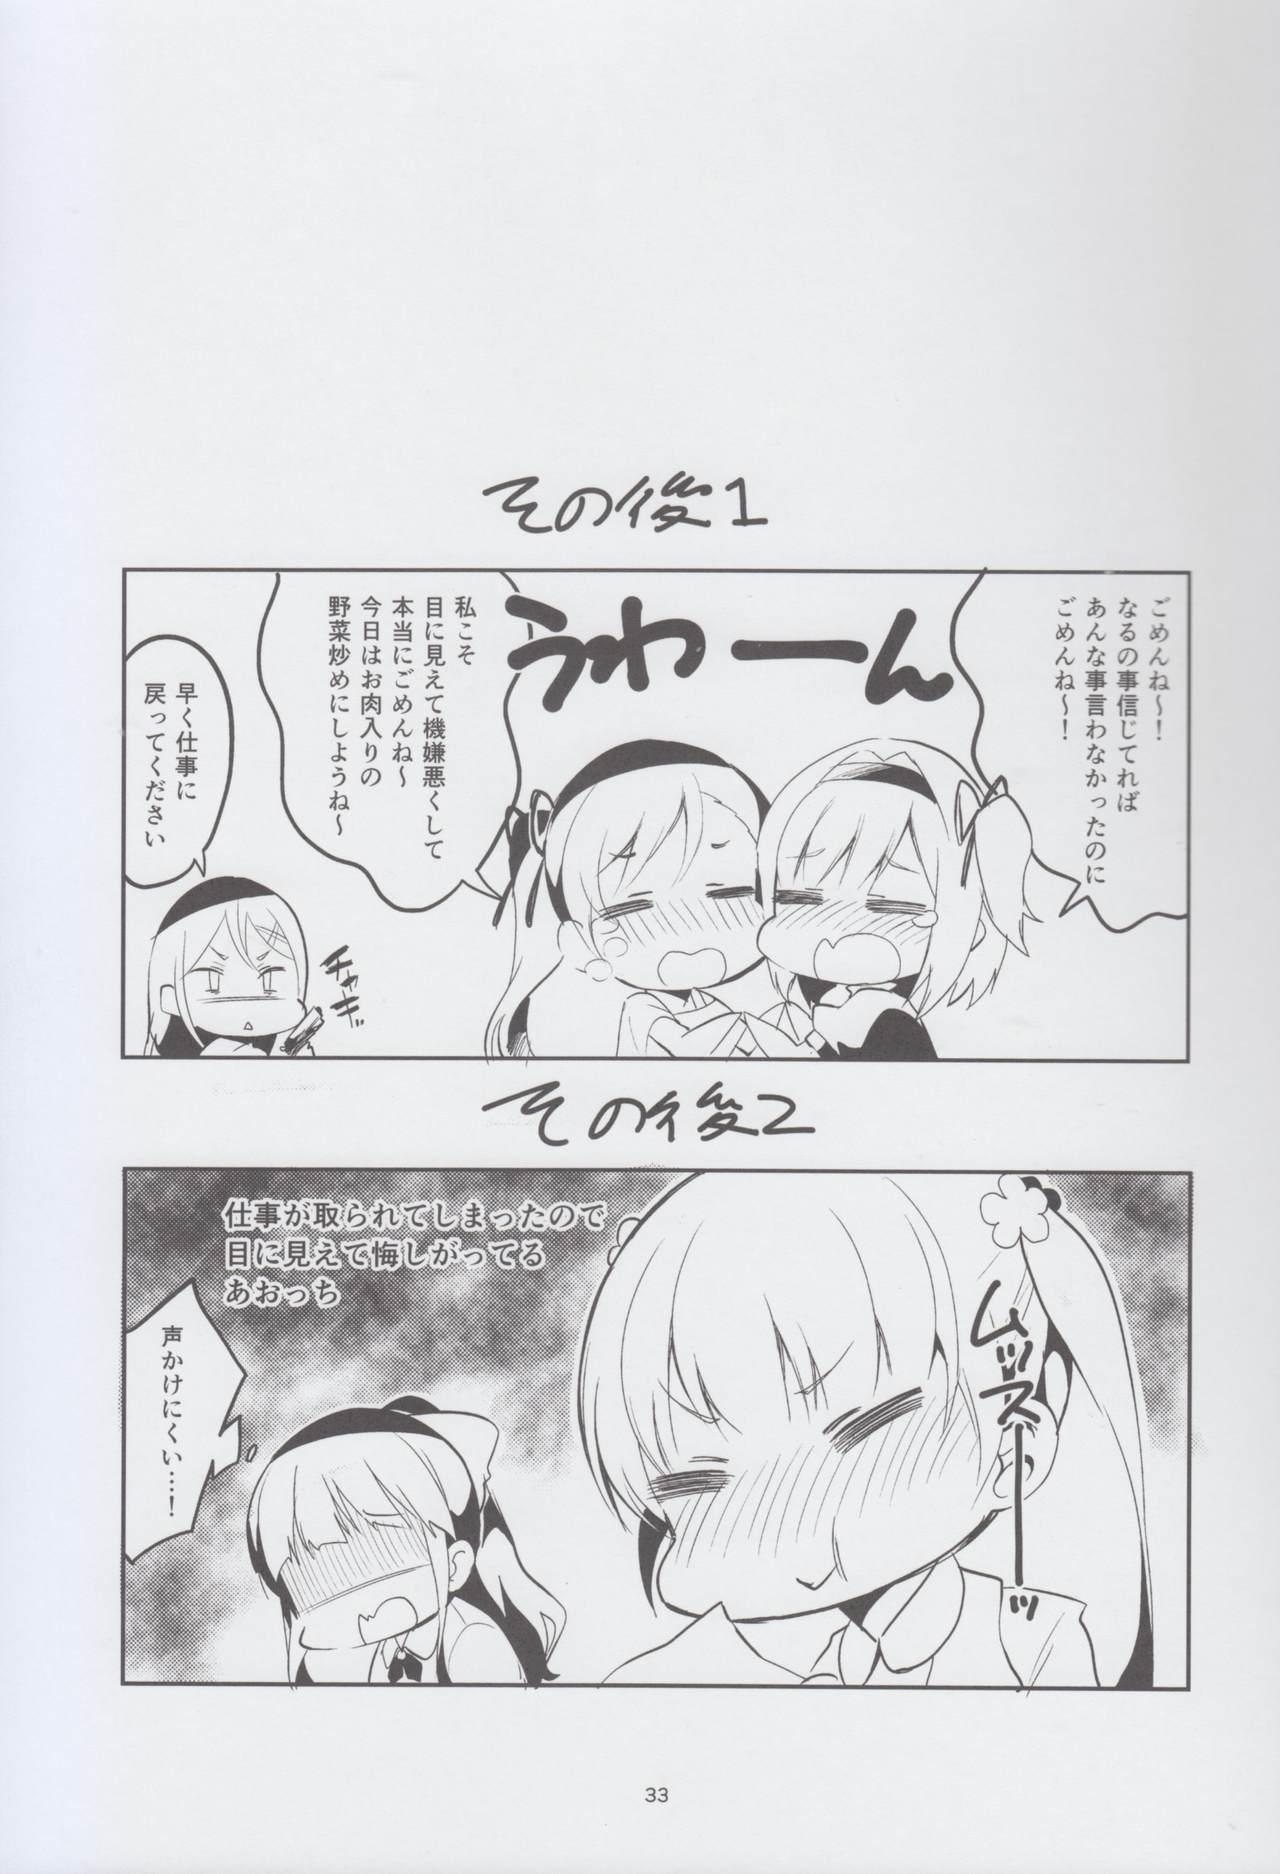 Ass Fuck Shinjin dakara Komori o Makasaremashita.... - New game Relax - Page 33